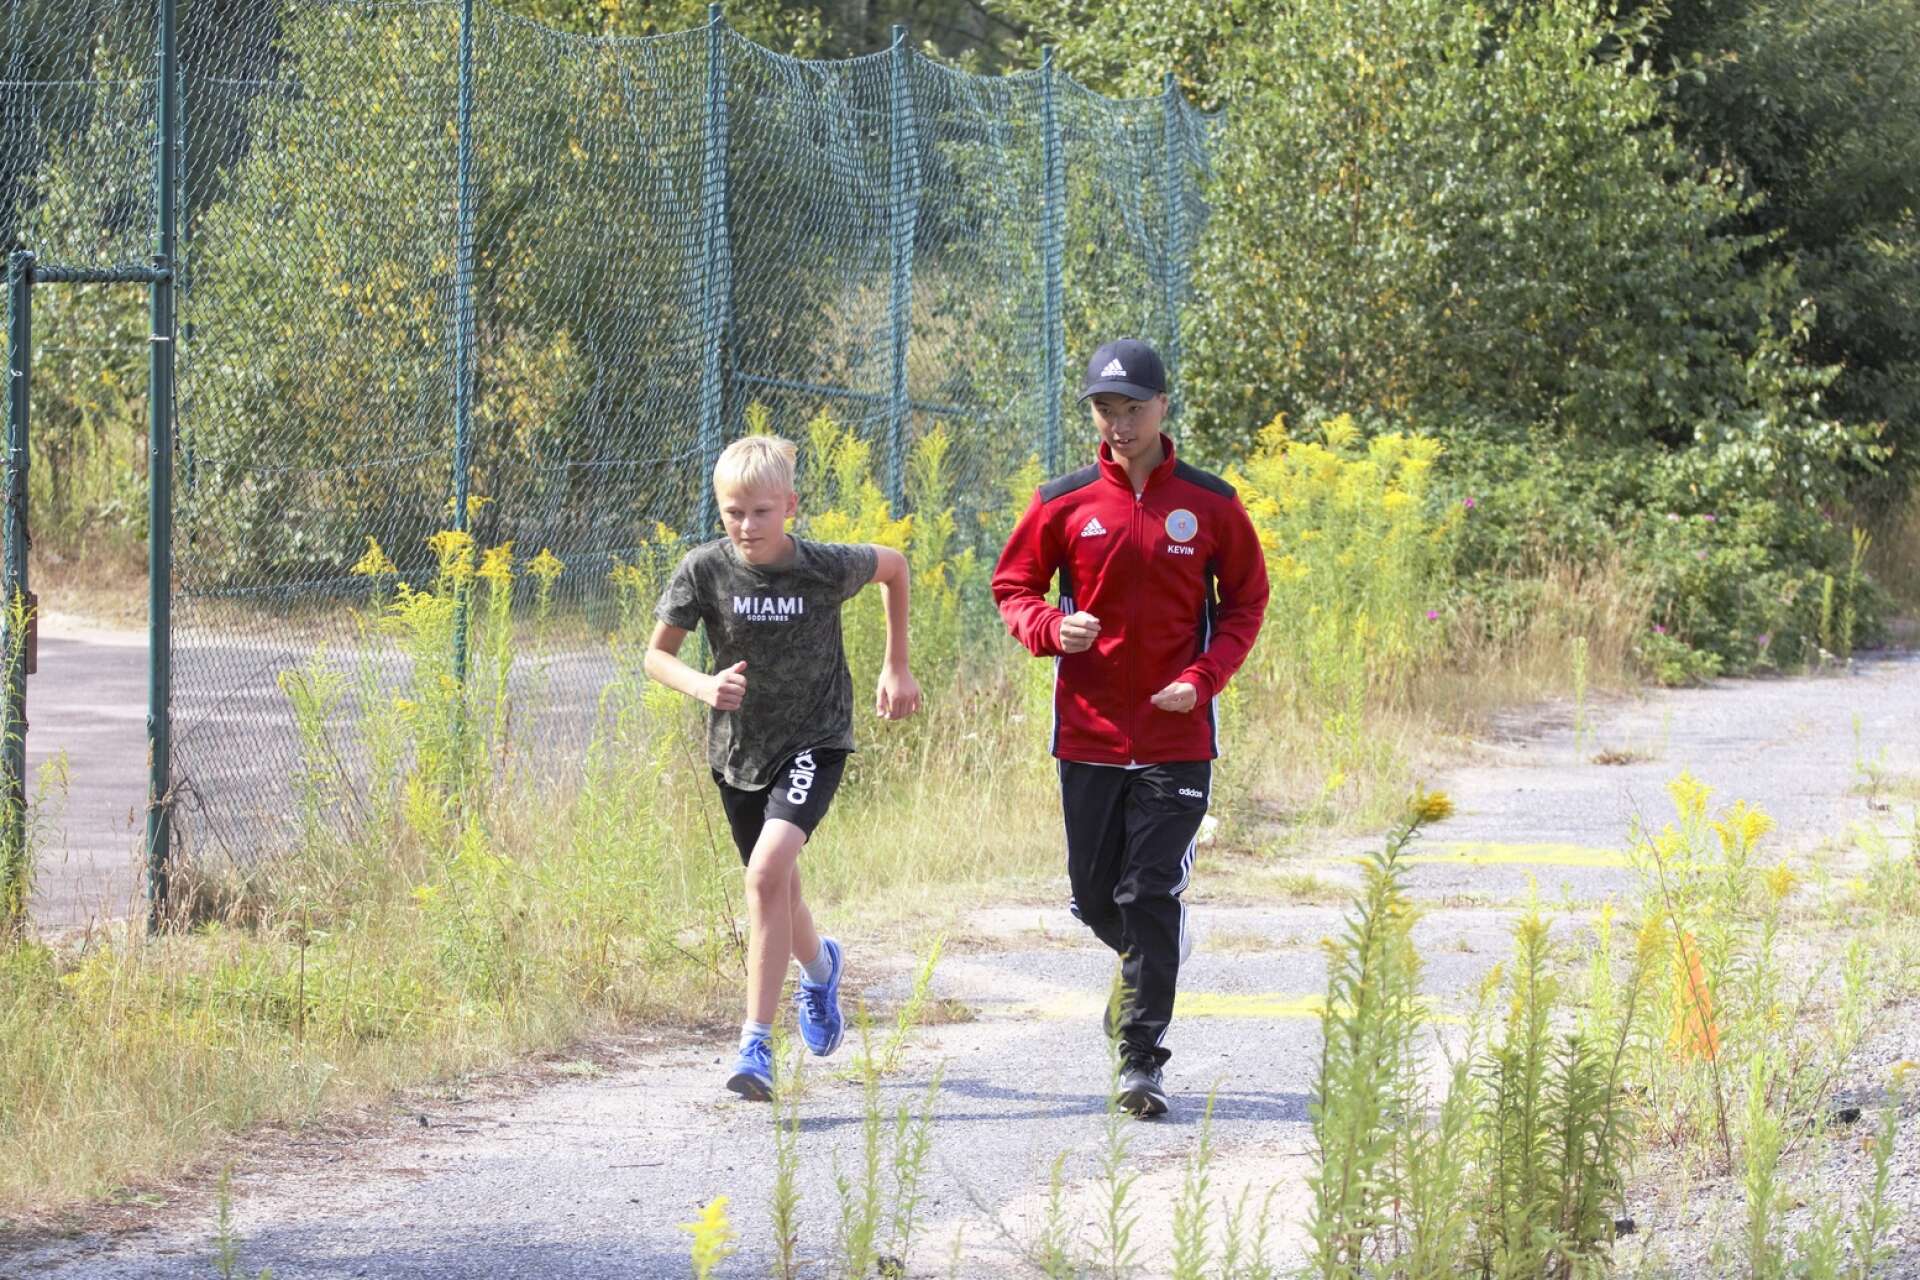 Isak Lundell och Kevin Van ger sig iväg på sin första löprunda när de provade den nya grenen target sprint.